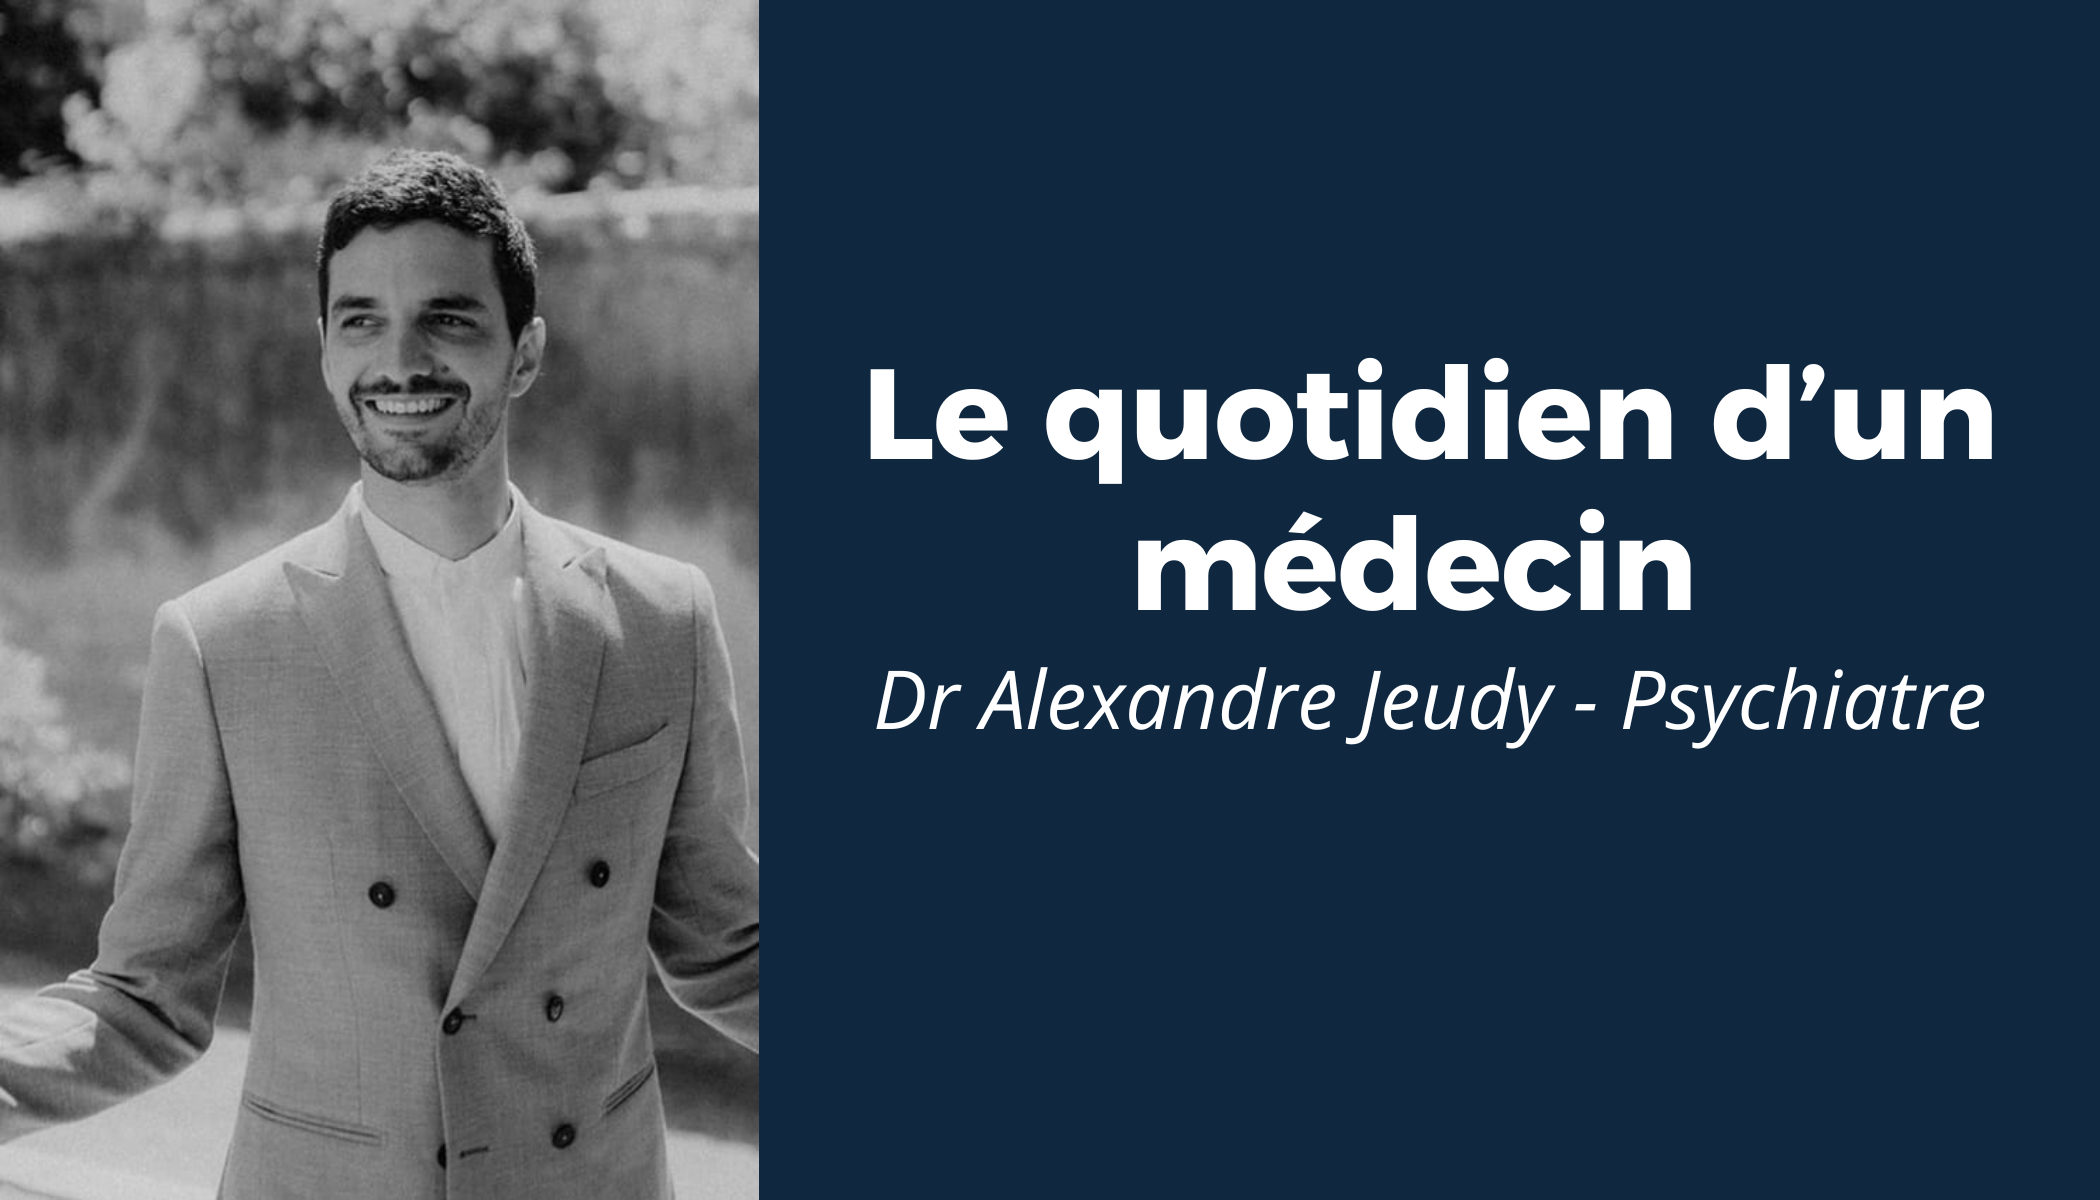 “Le quotidien d’un médecin” #1 - Rencontre avec le Dr Alexandre Jeudy 
